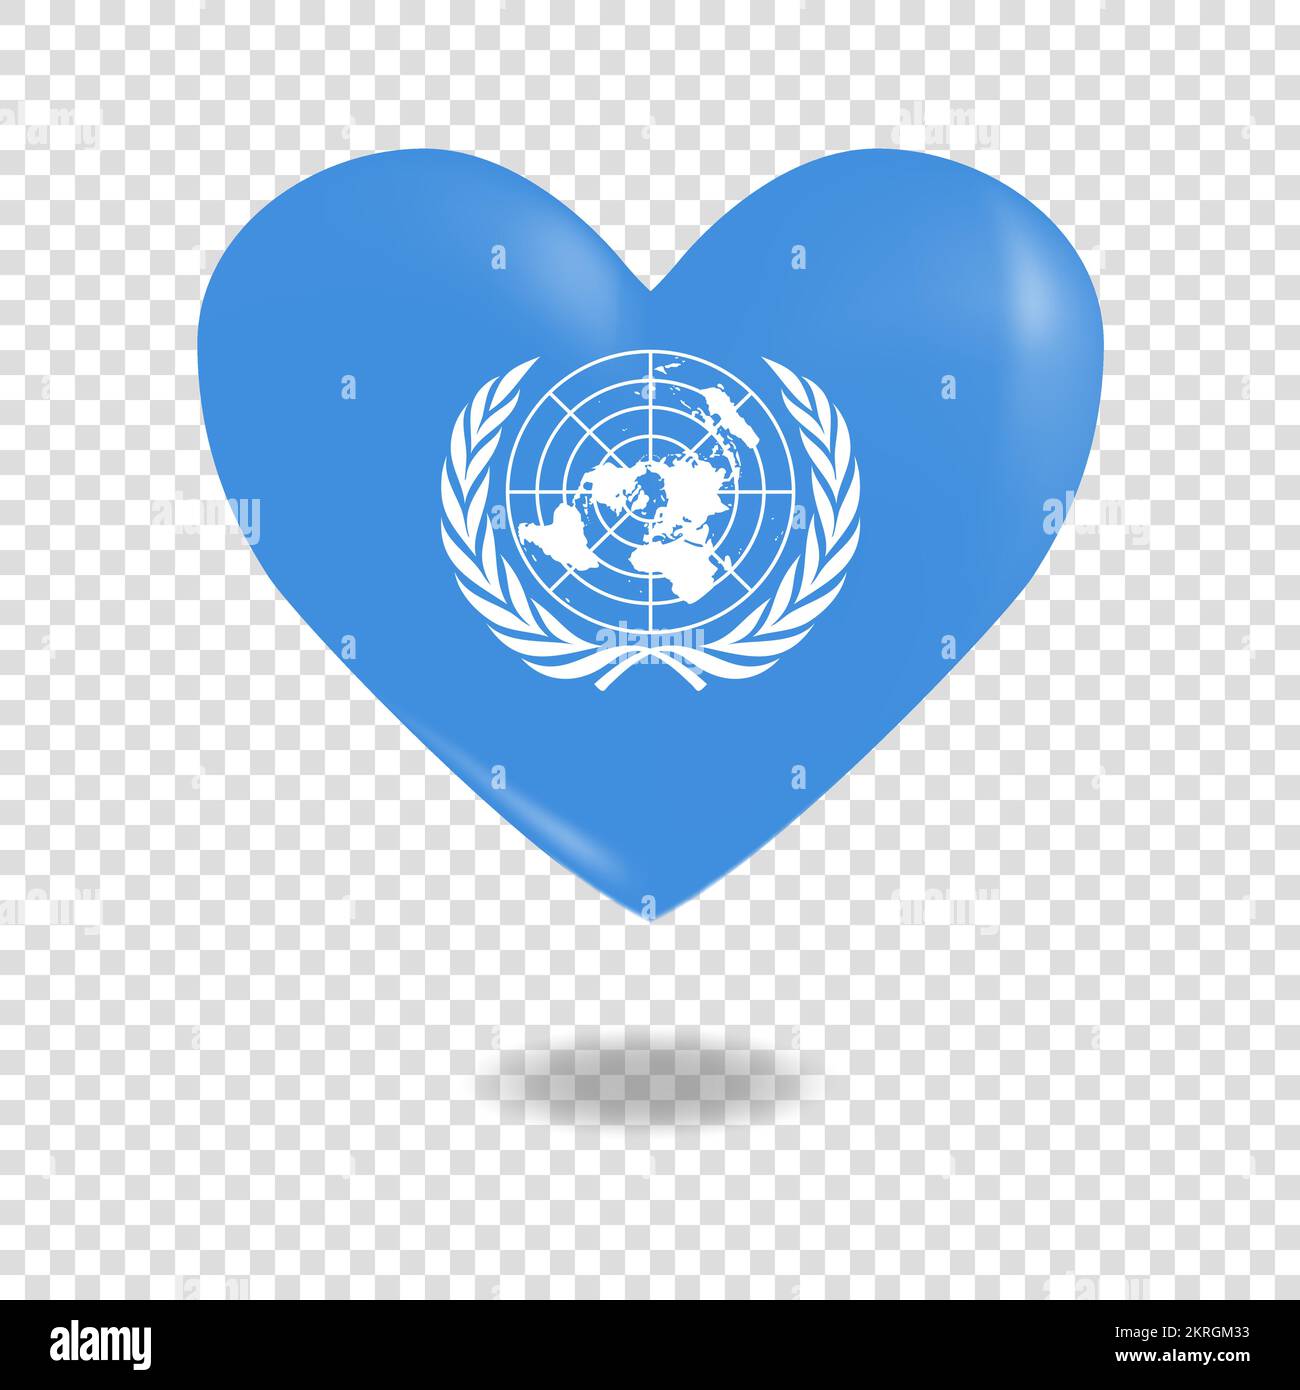 Liên Hiệp Quốc: Hãy khám phá về tổ chức quốc tế hùng mạnh này và tìm hiểu về tầm ảnh hưởng của nó đối với thế giới ngày nay.